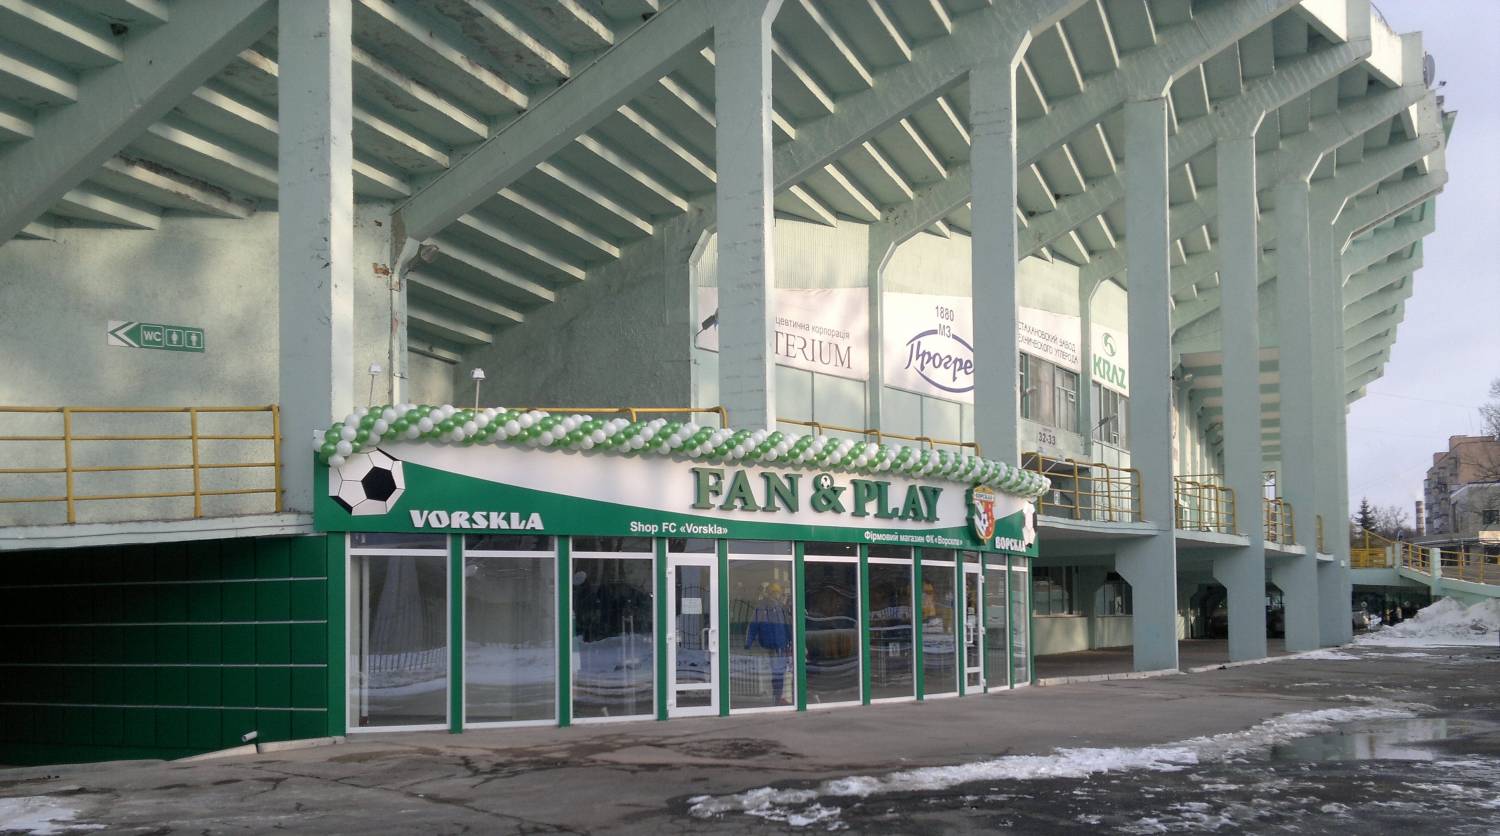 Fan shop FC "Vorskla"